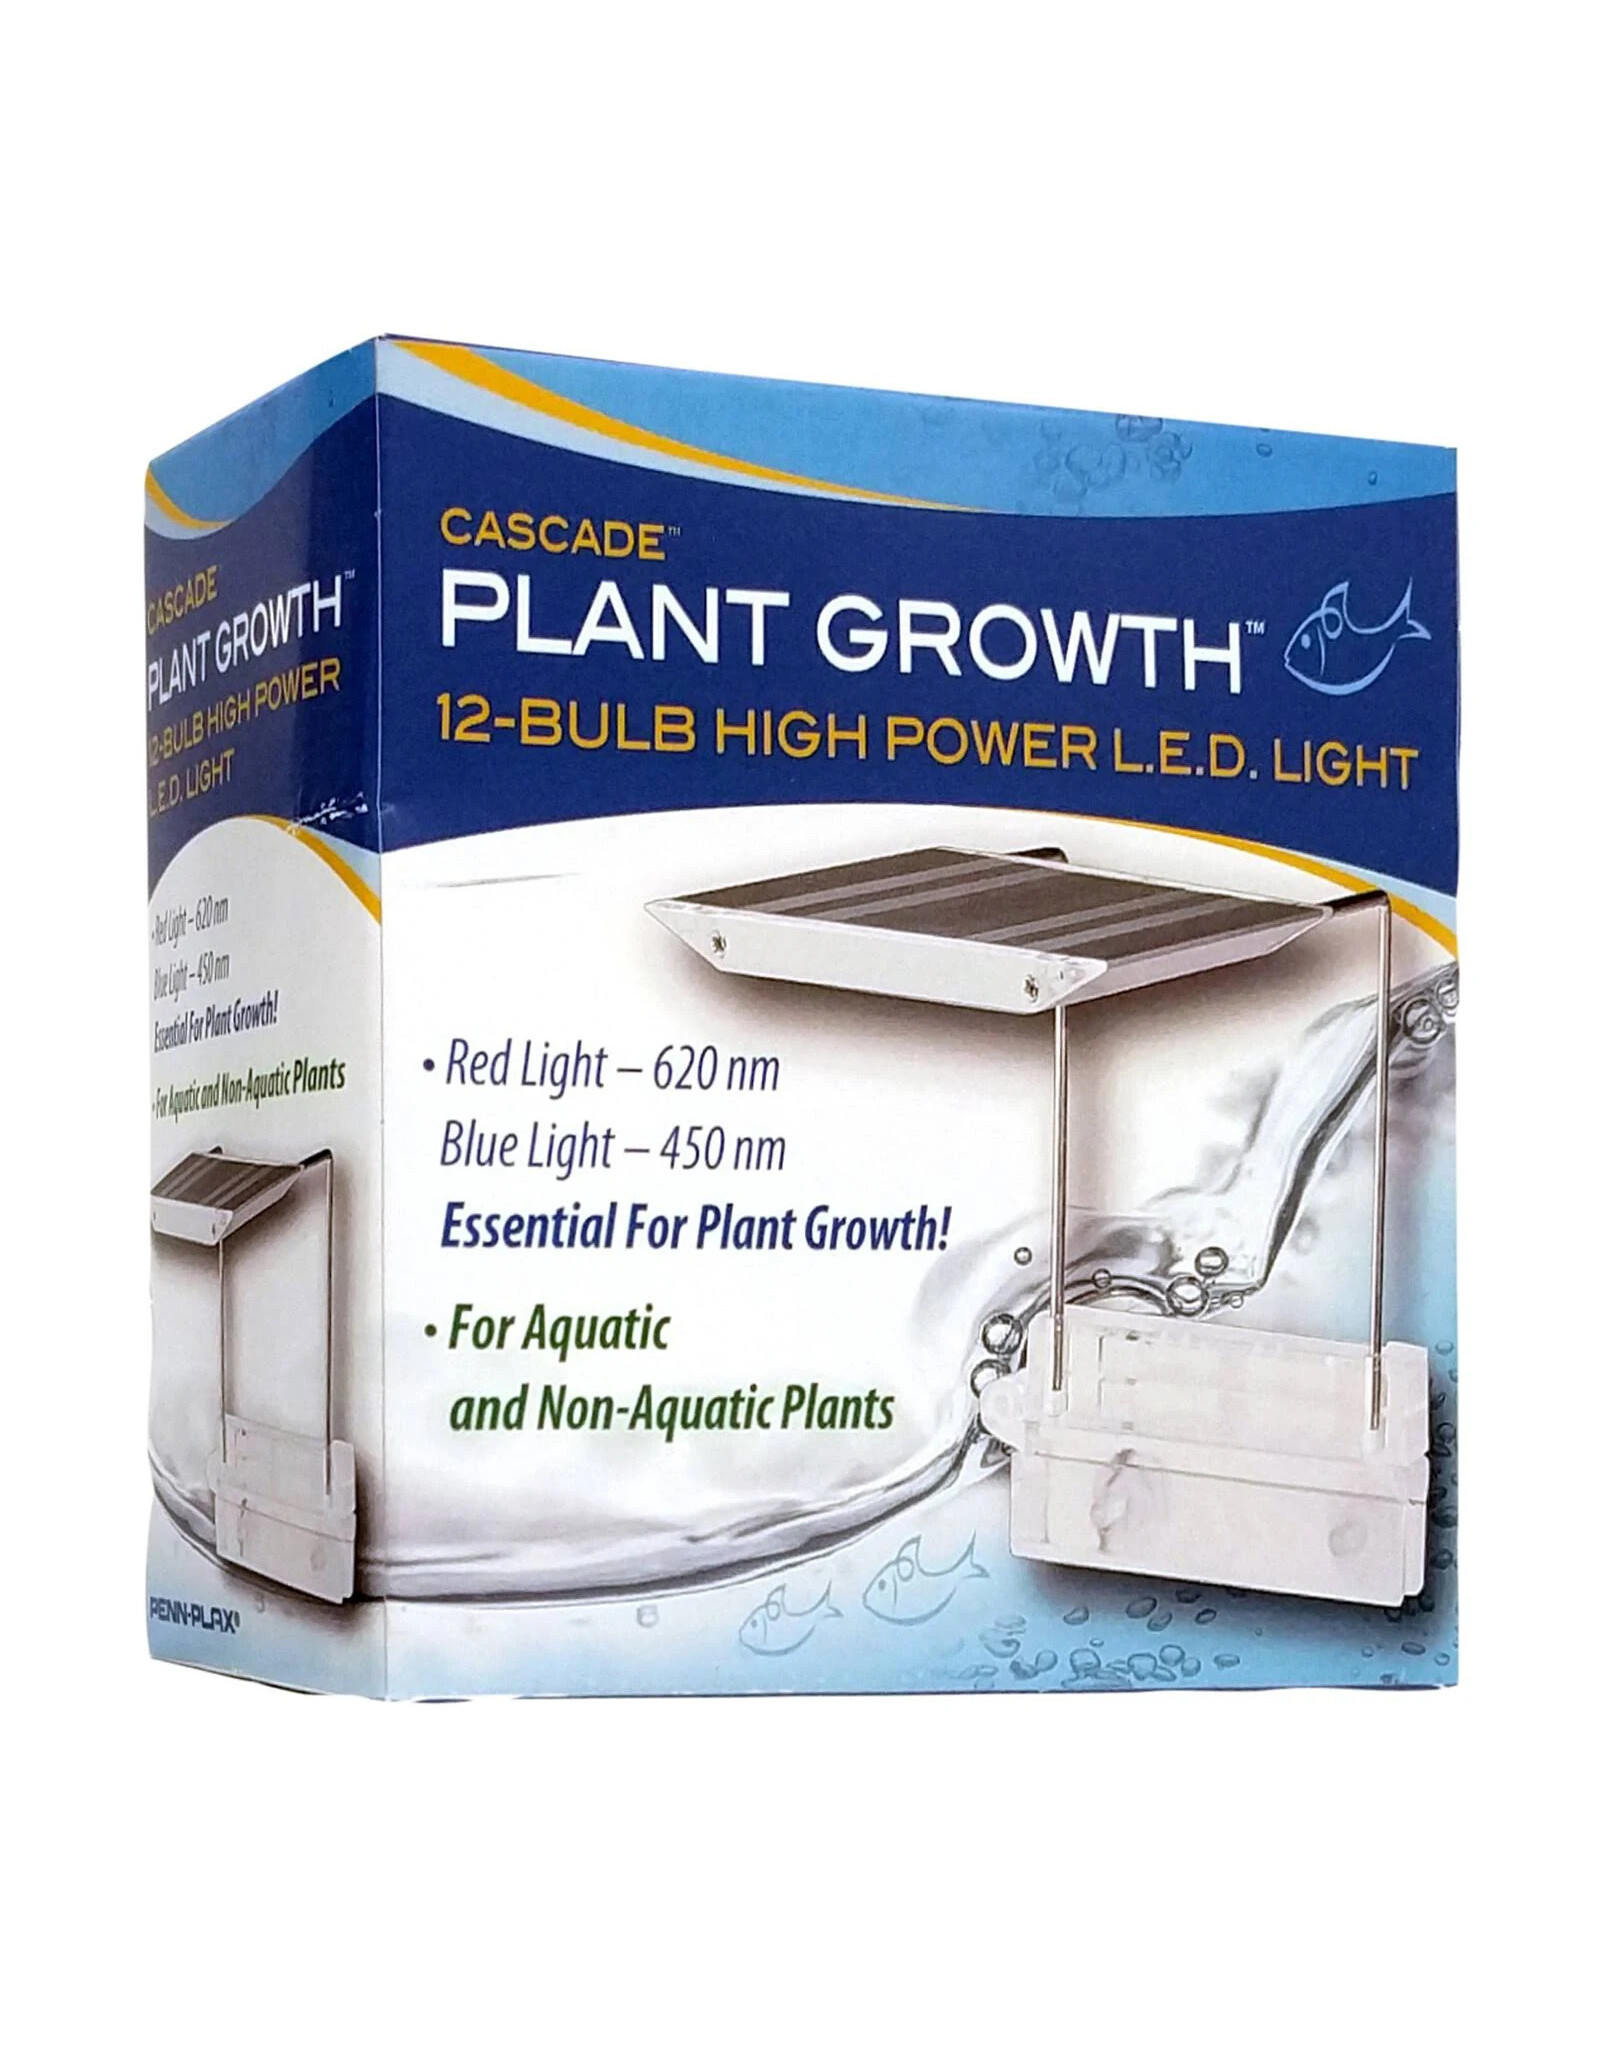 Penn Plax PENN PLAX Cascade Plant Growth High Power 12 Bulb LED Light